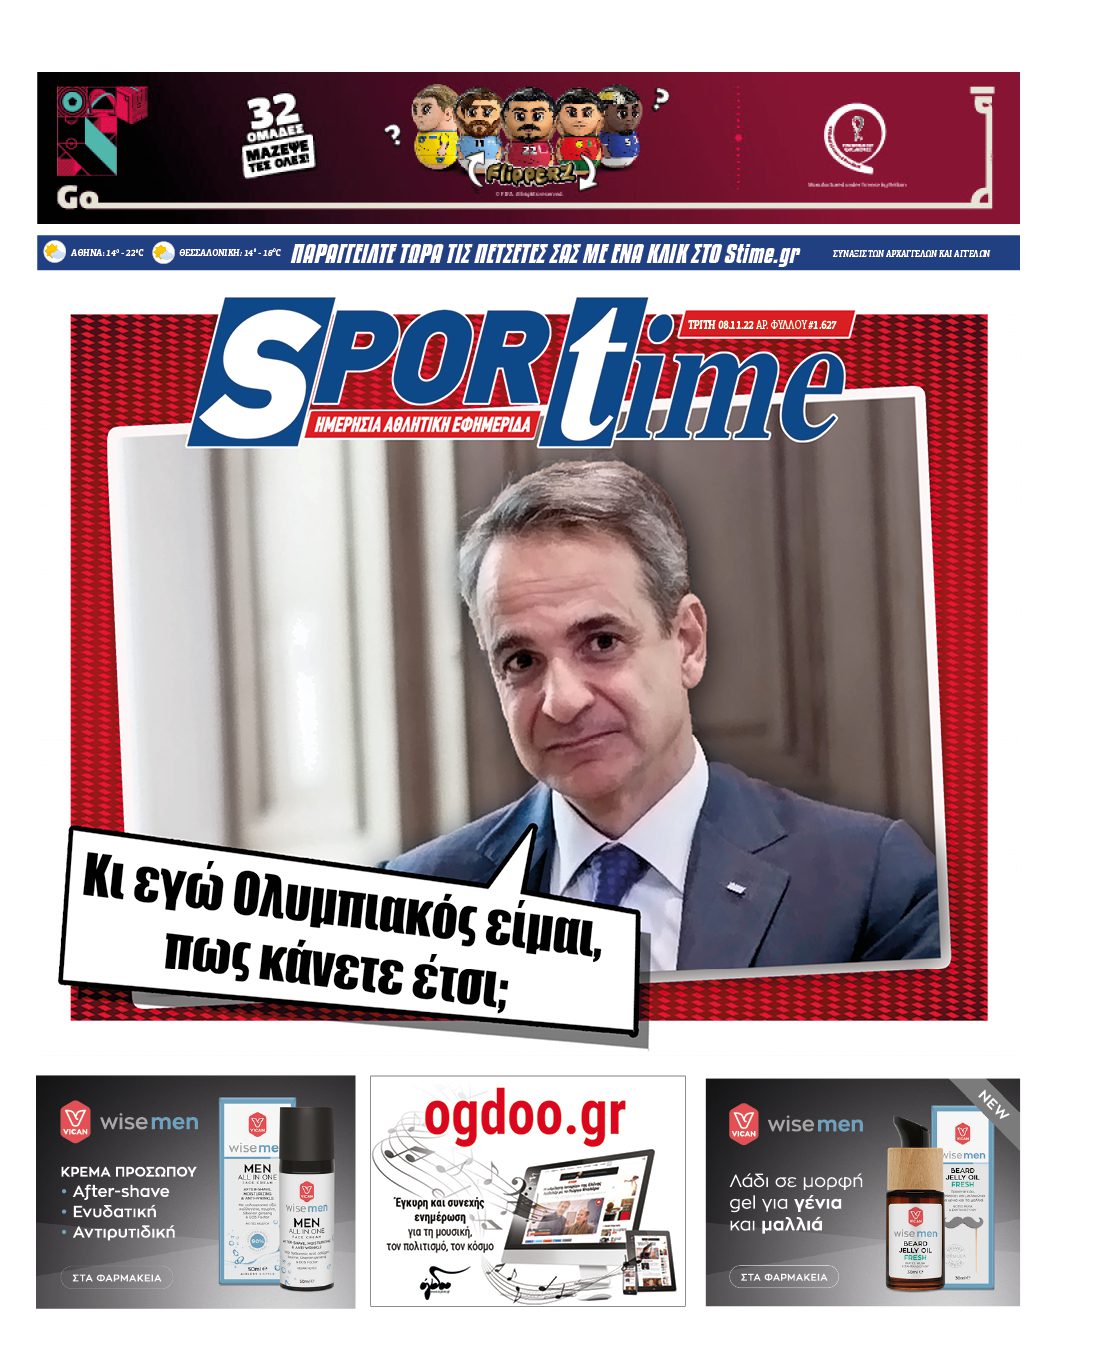 Πρωτοσέλιδα αθλητικών εφημερίδων για τη Τρίτη 8 Νοεμβρίου 2022. Αναλυτικά τι αναφέρουν όλες οι εφημερίδες, σε Αθήνα και Θεσσαλονίκη.